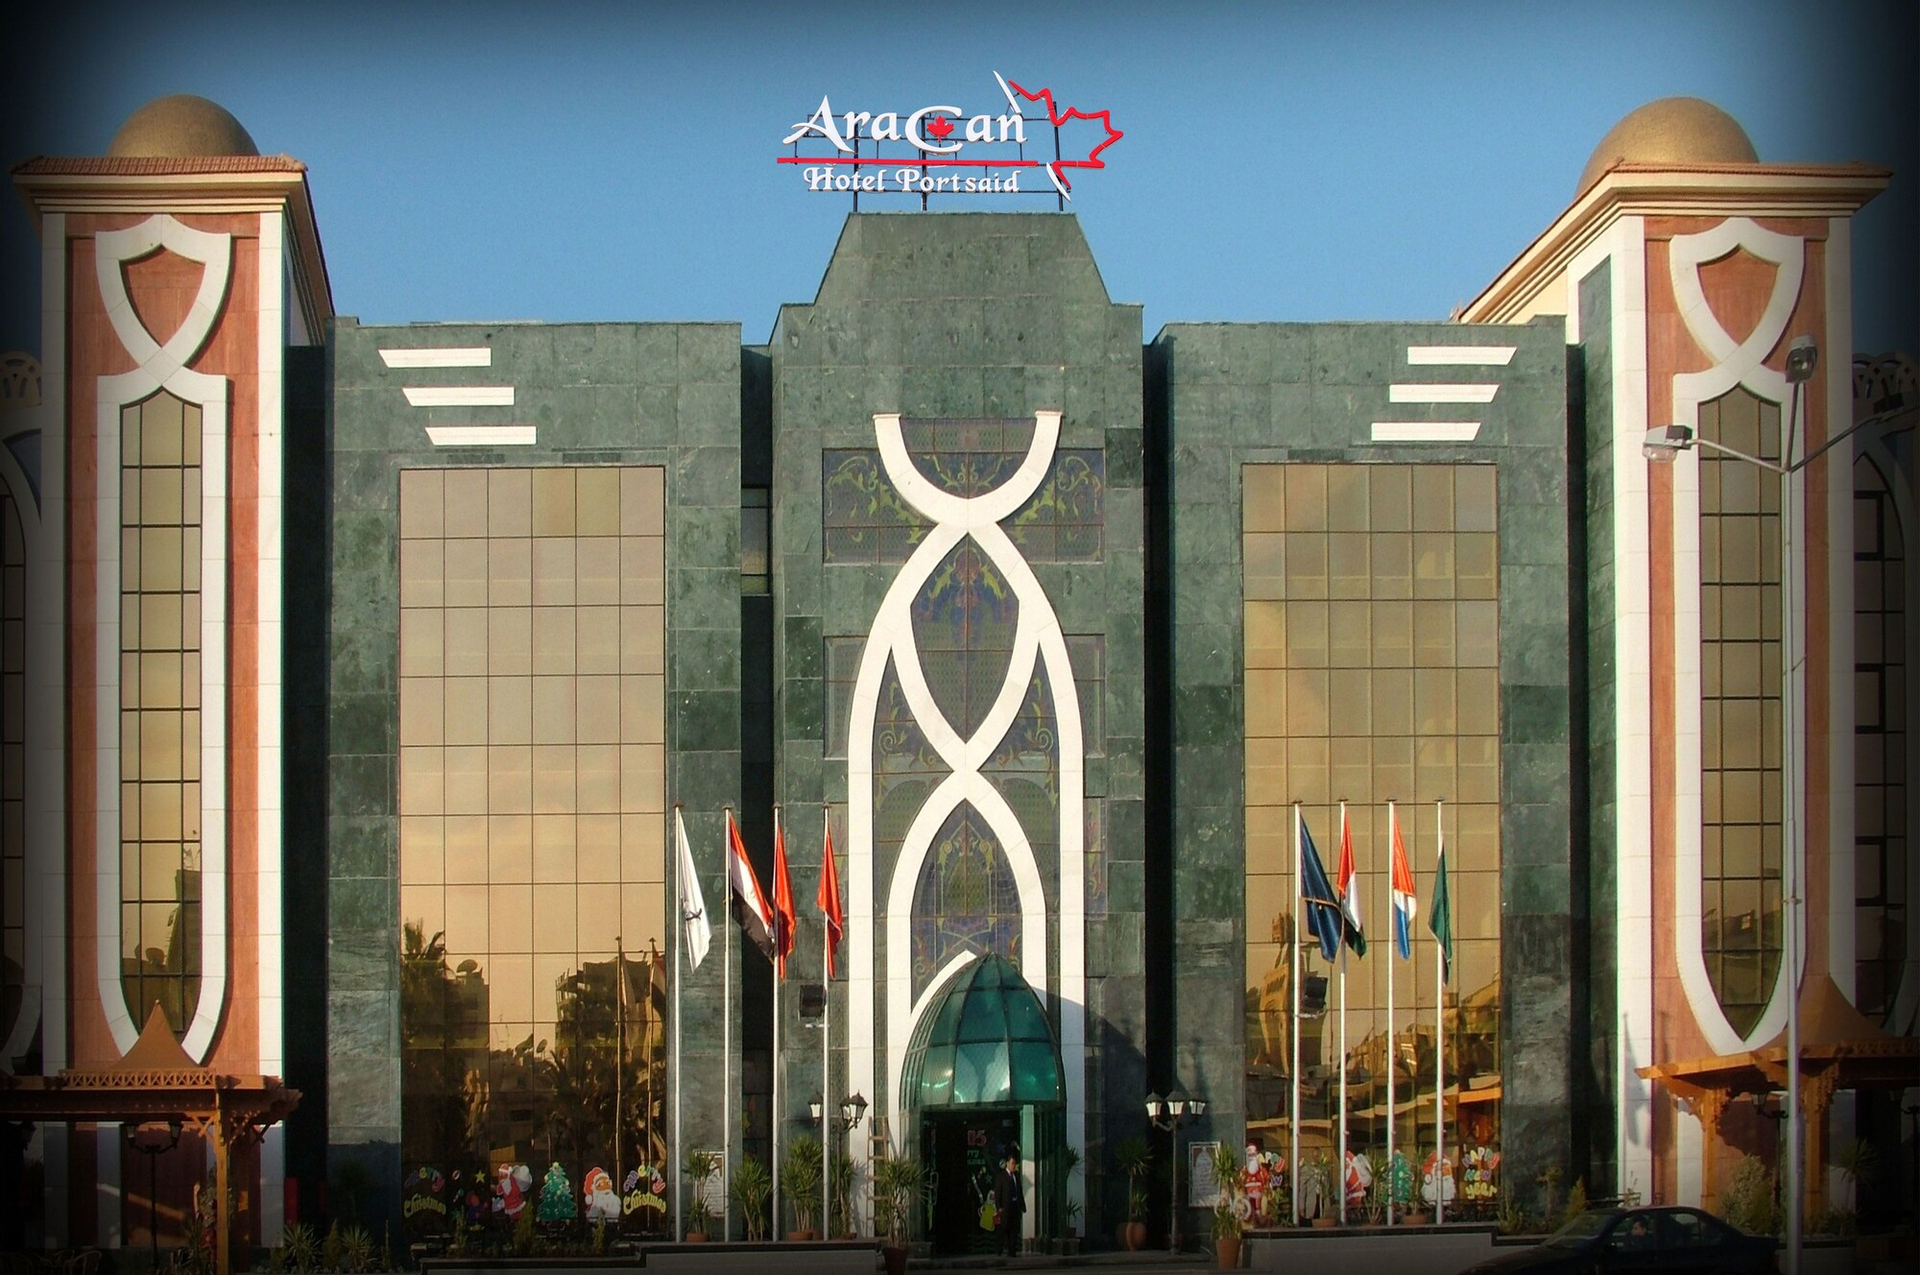 Exterior & Views, Aracan Hotel, Ash-Sharq